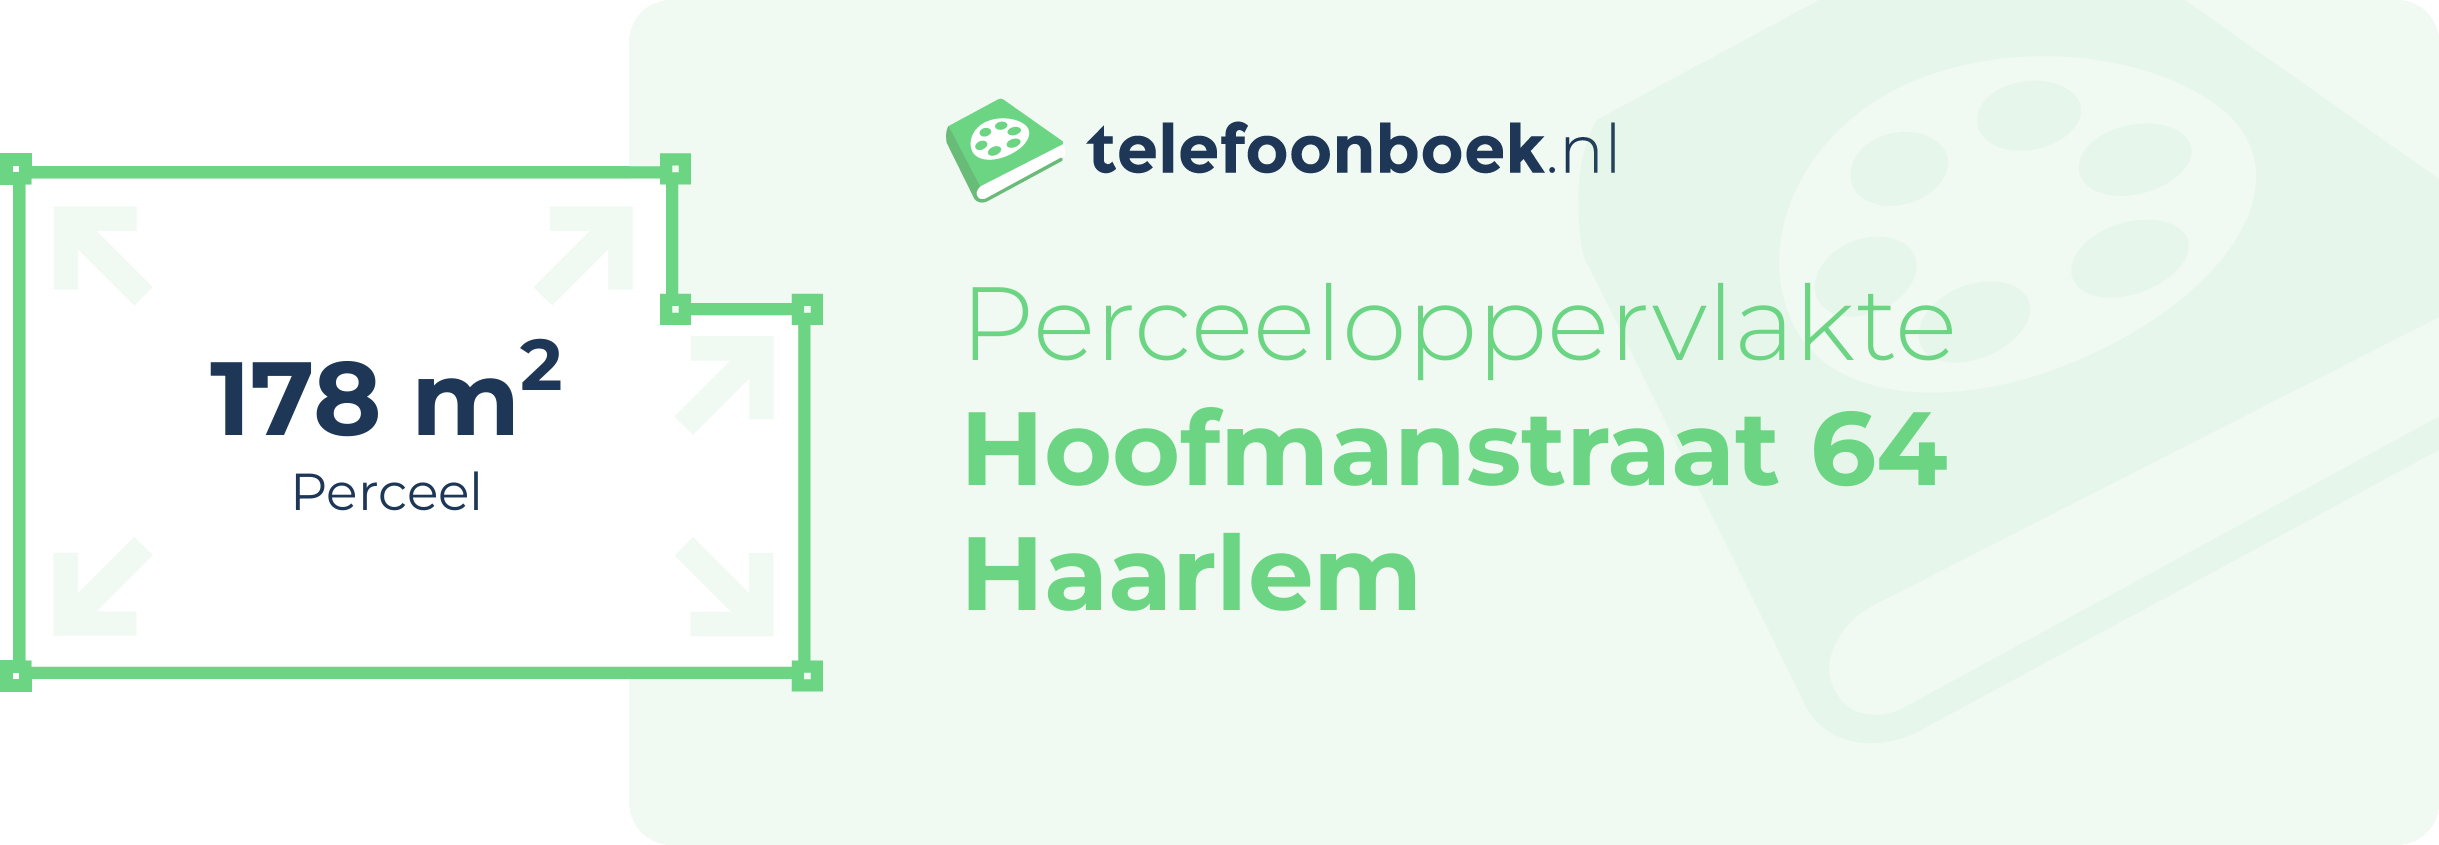 Perceeloppervlakte Hoofmanstraat 64 Haarlem